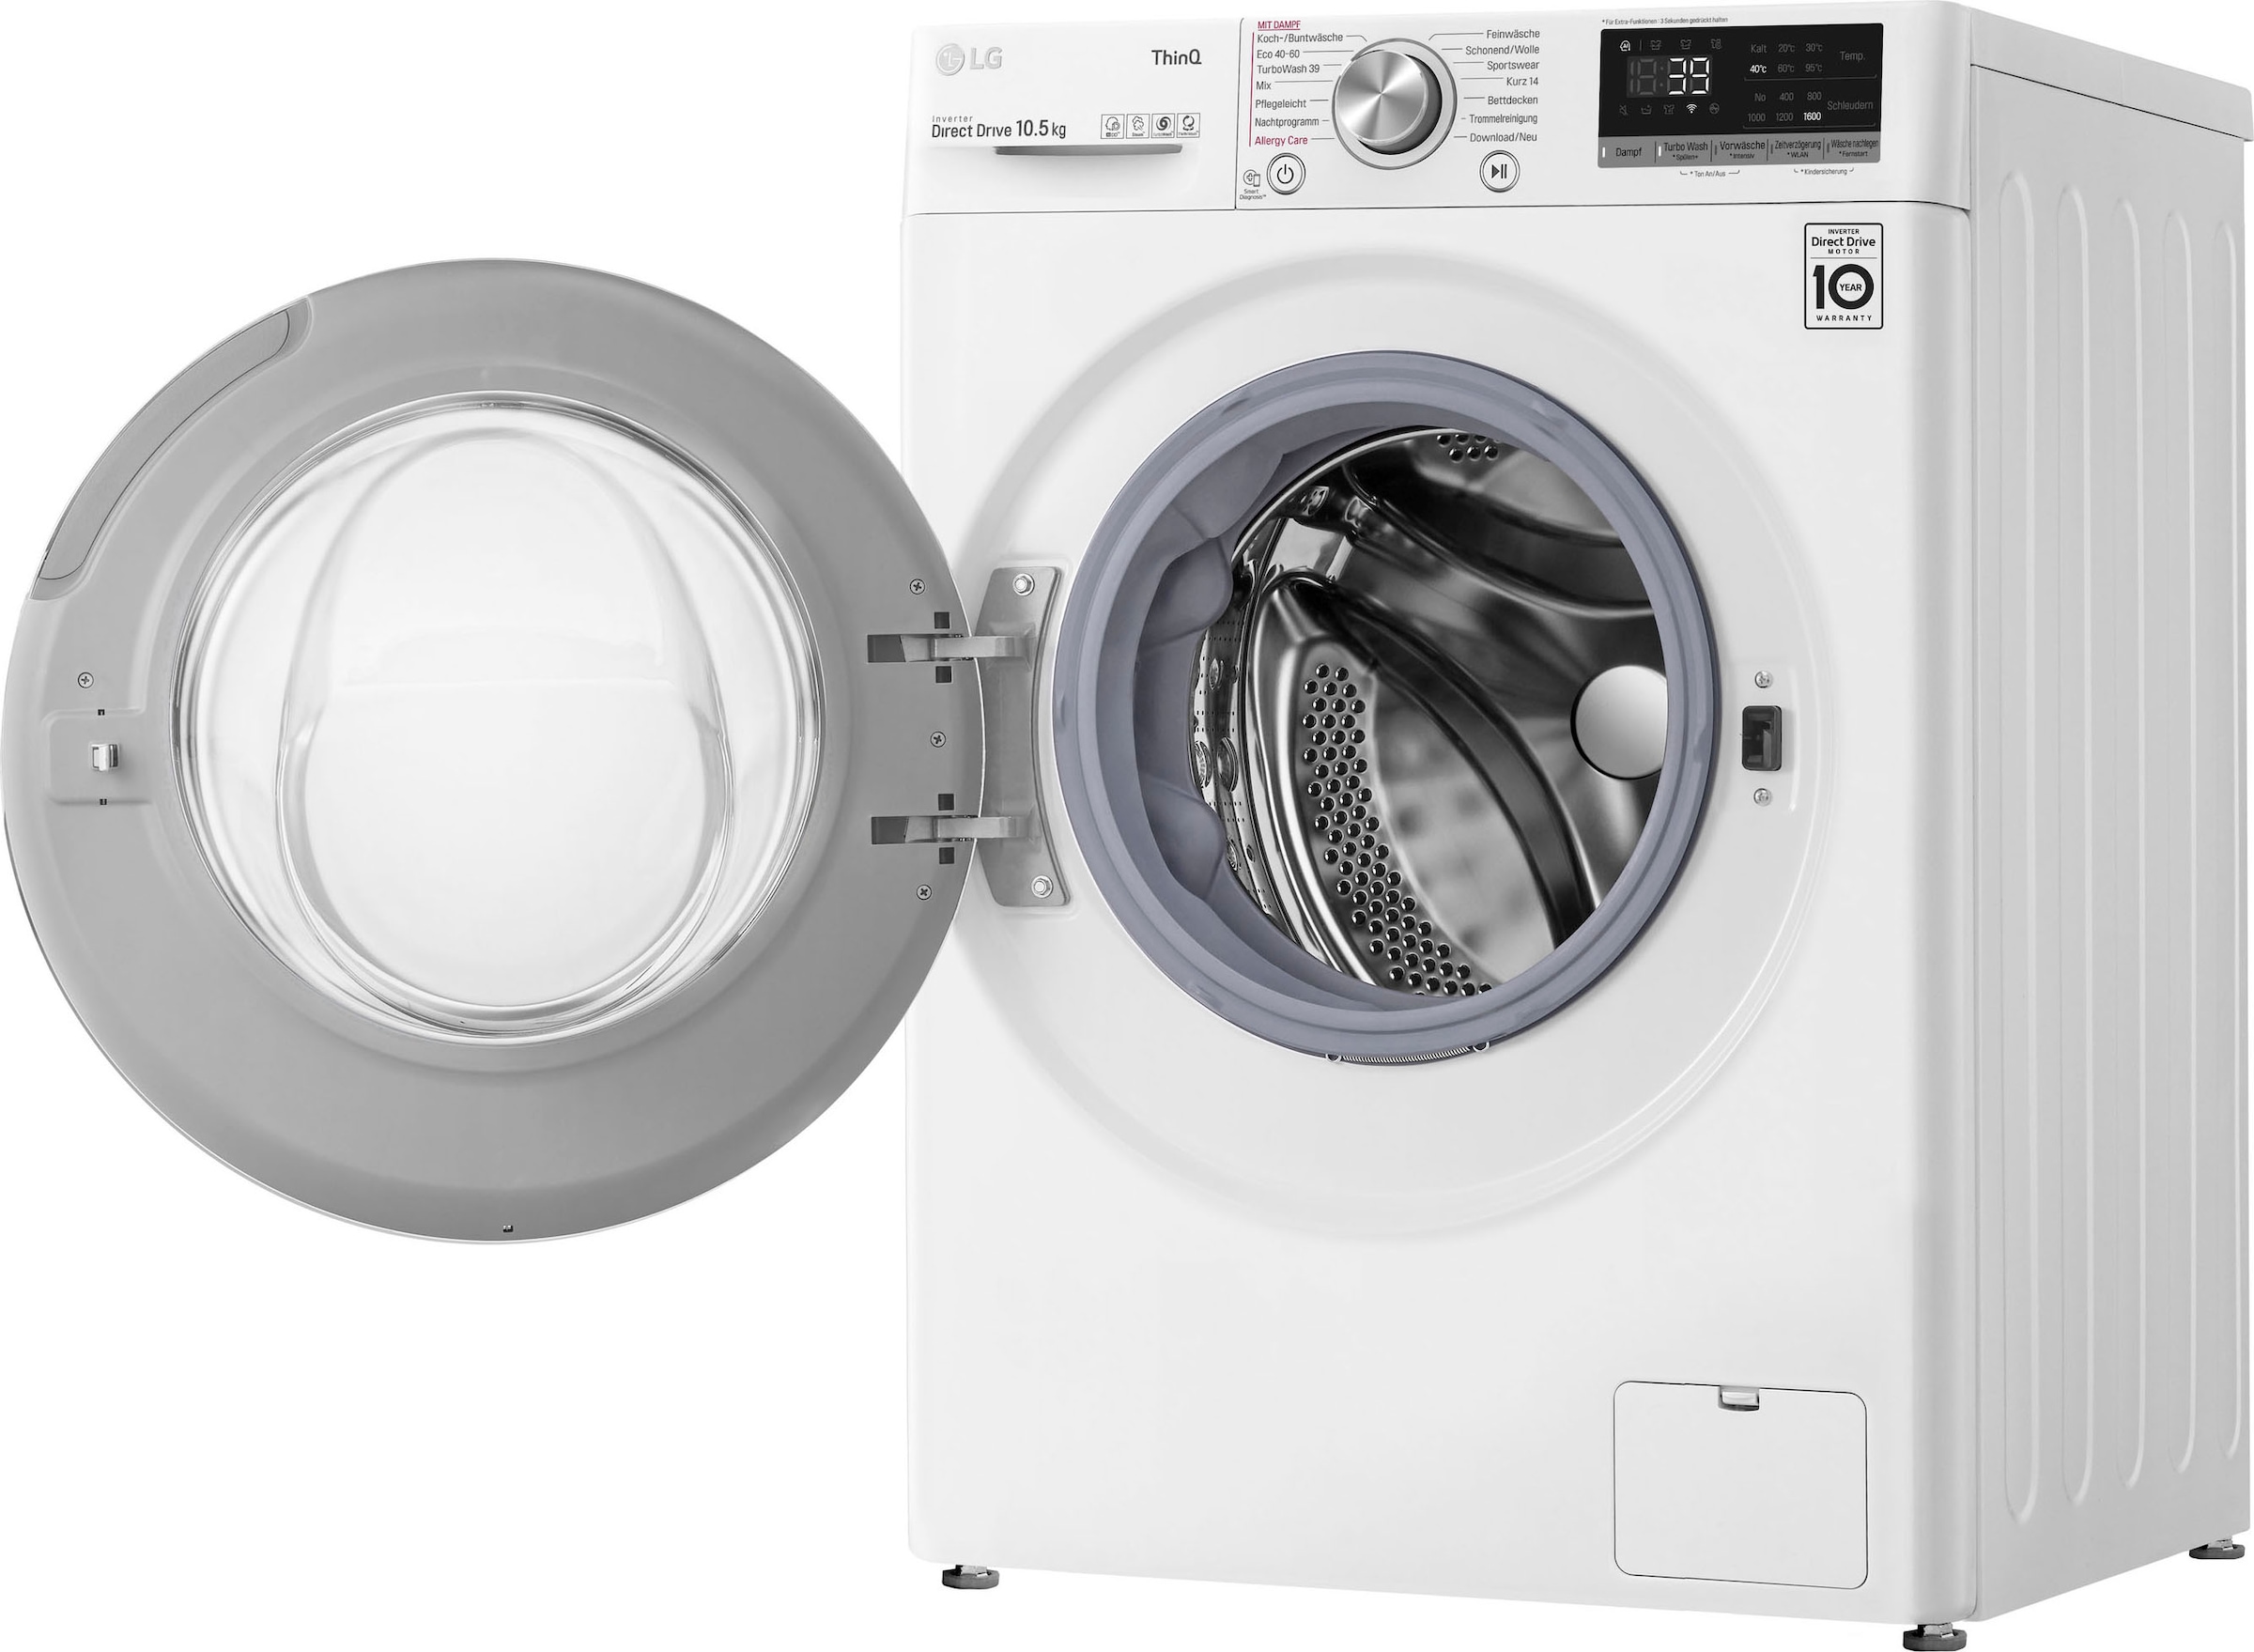 LG Waschmaschine »F4WV5080«, F4WV5080, Steam-Funktion kaufen U/min, 1400 kg, 8